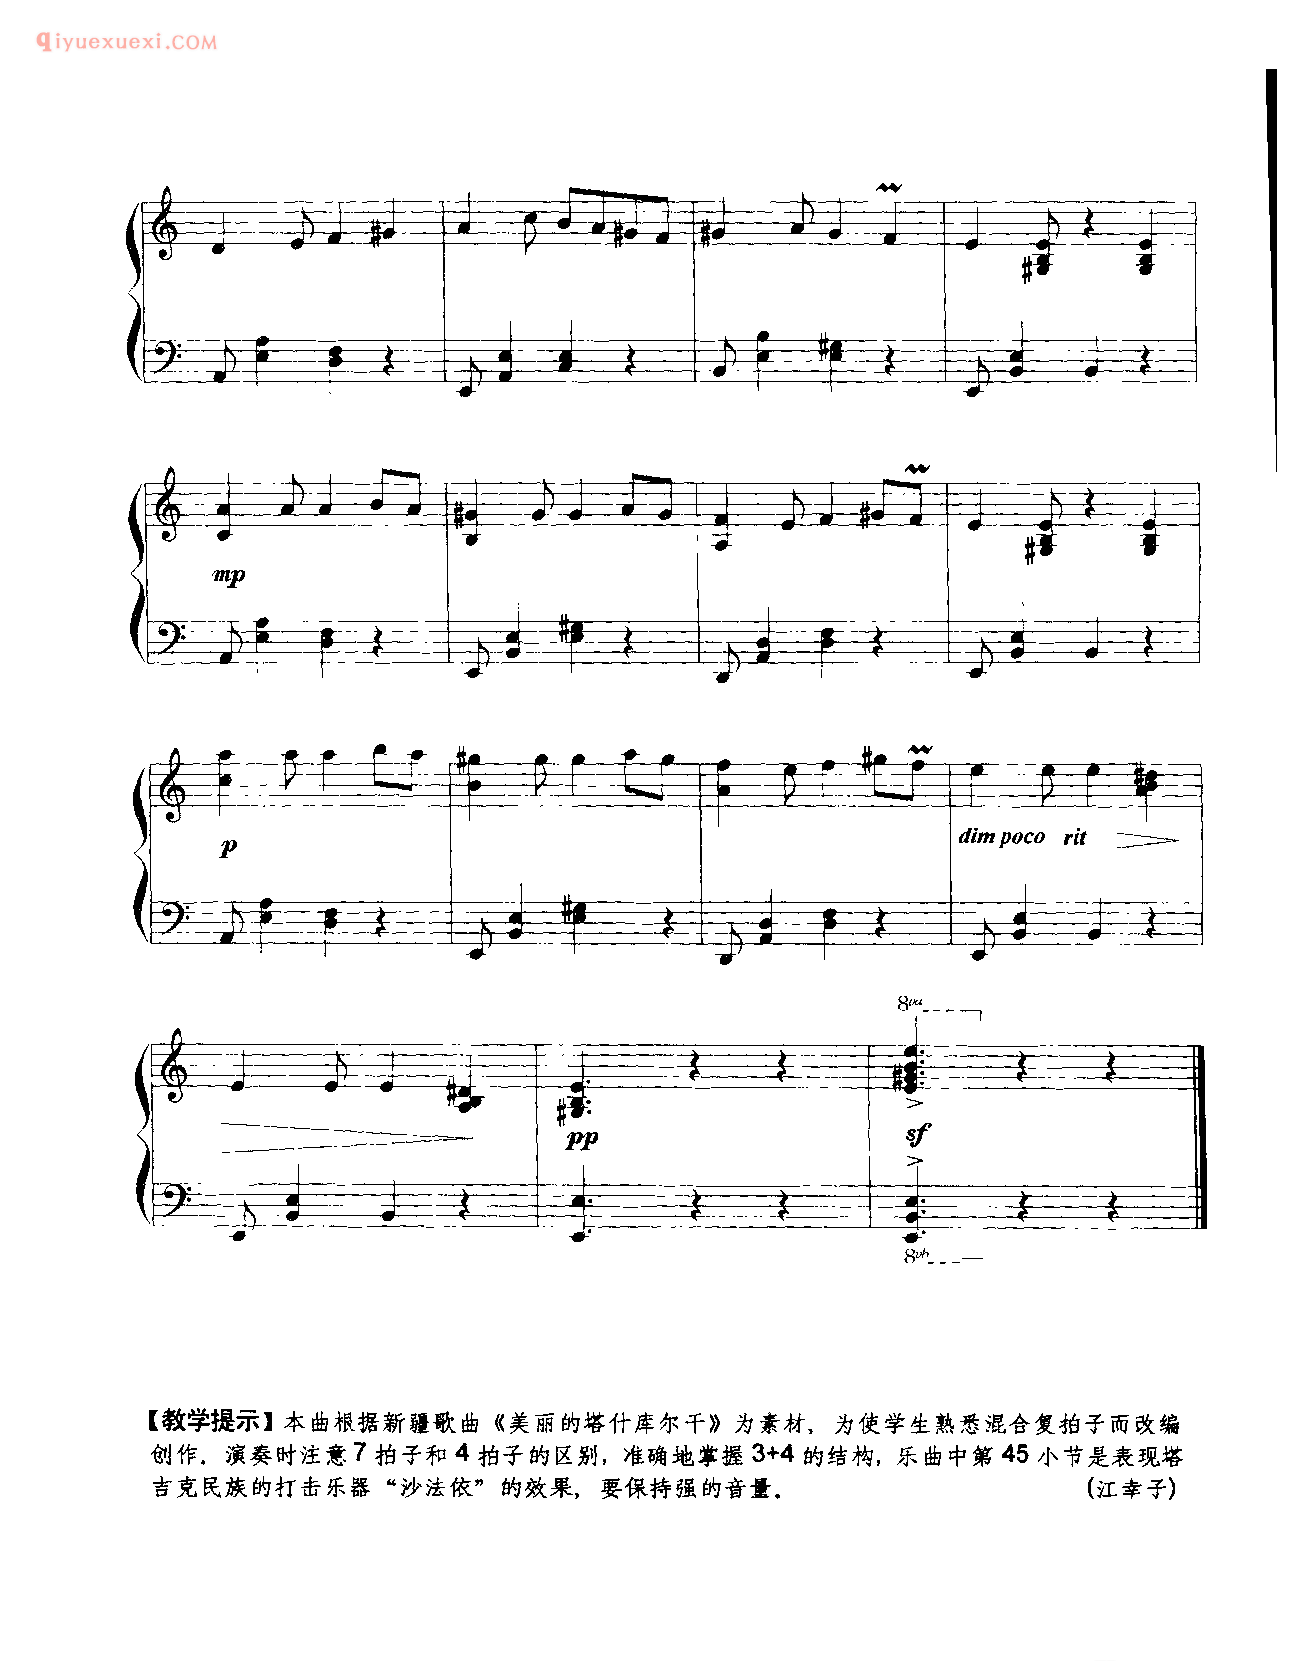 中国钢琴乐曲谱_塔吉克舞曲_江幸子改编